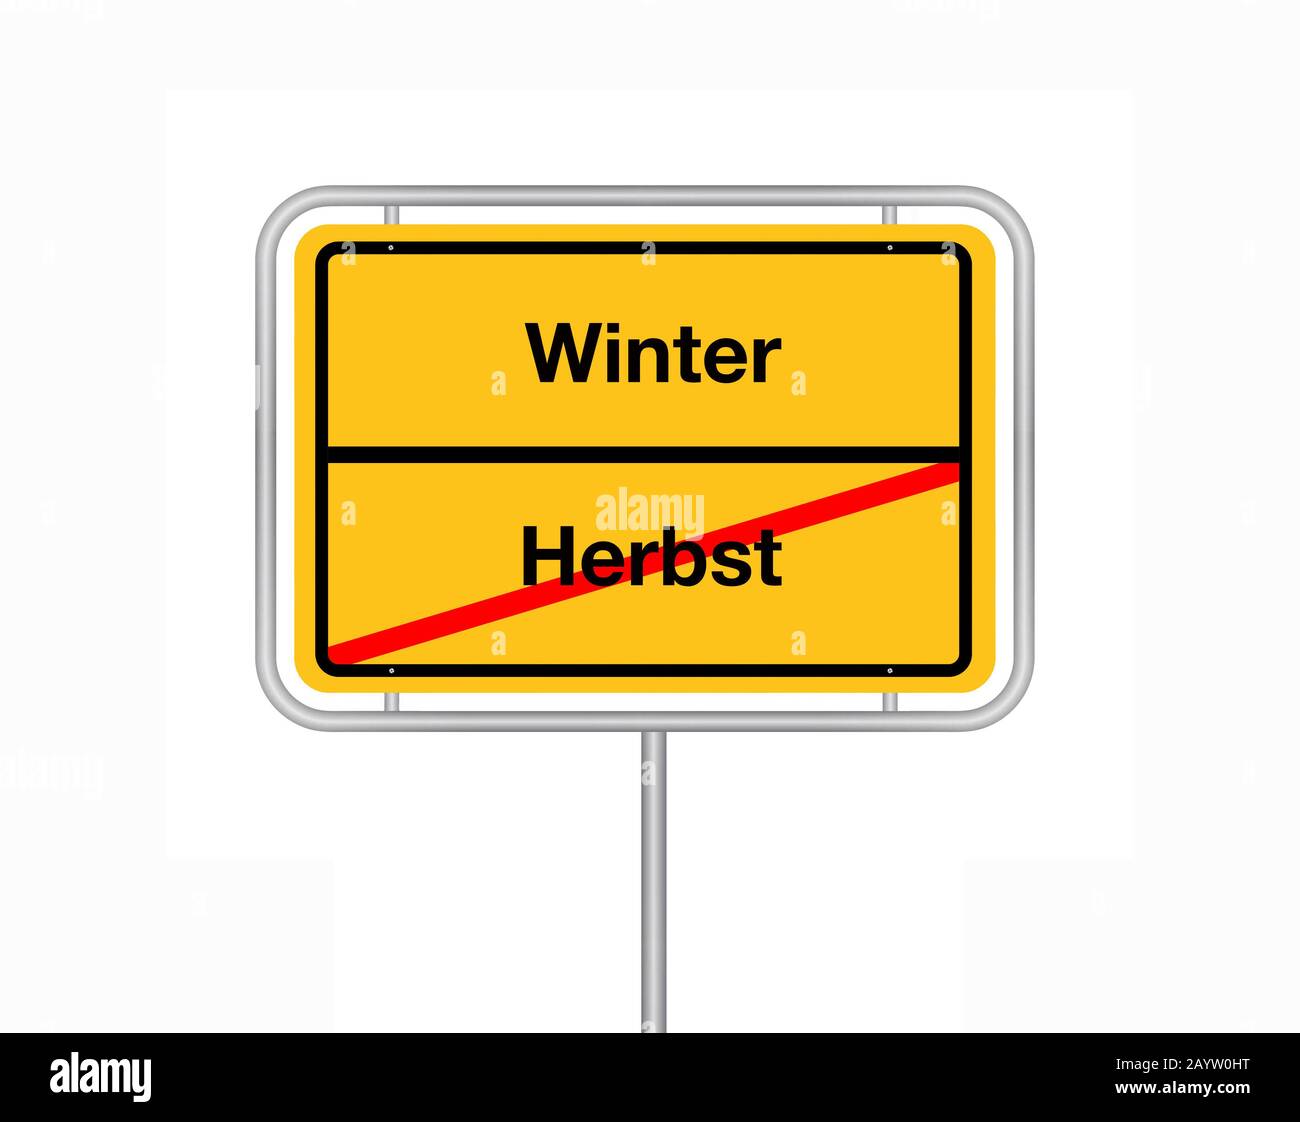 Simbolo del limite della città lettere Herbst - Inverno, autunno - inverno, Germania Foto Stock